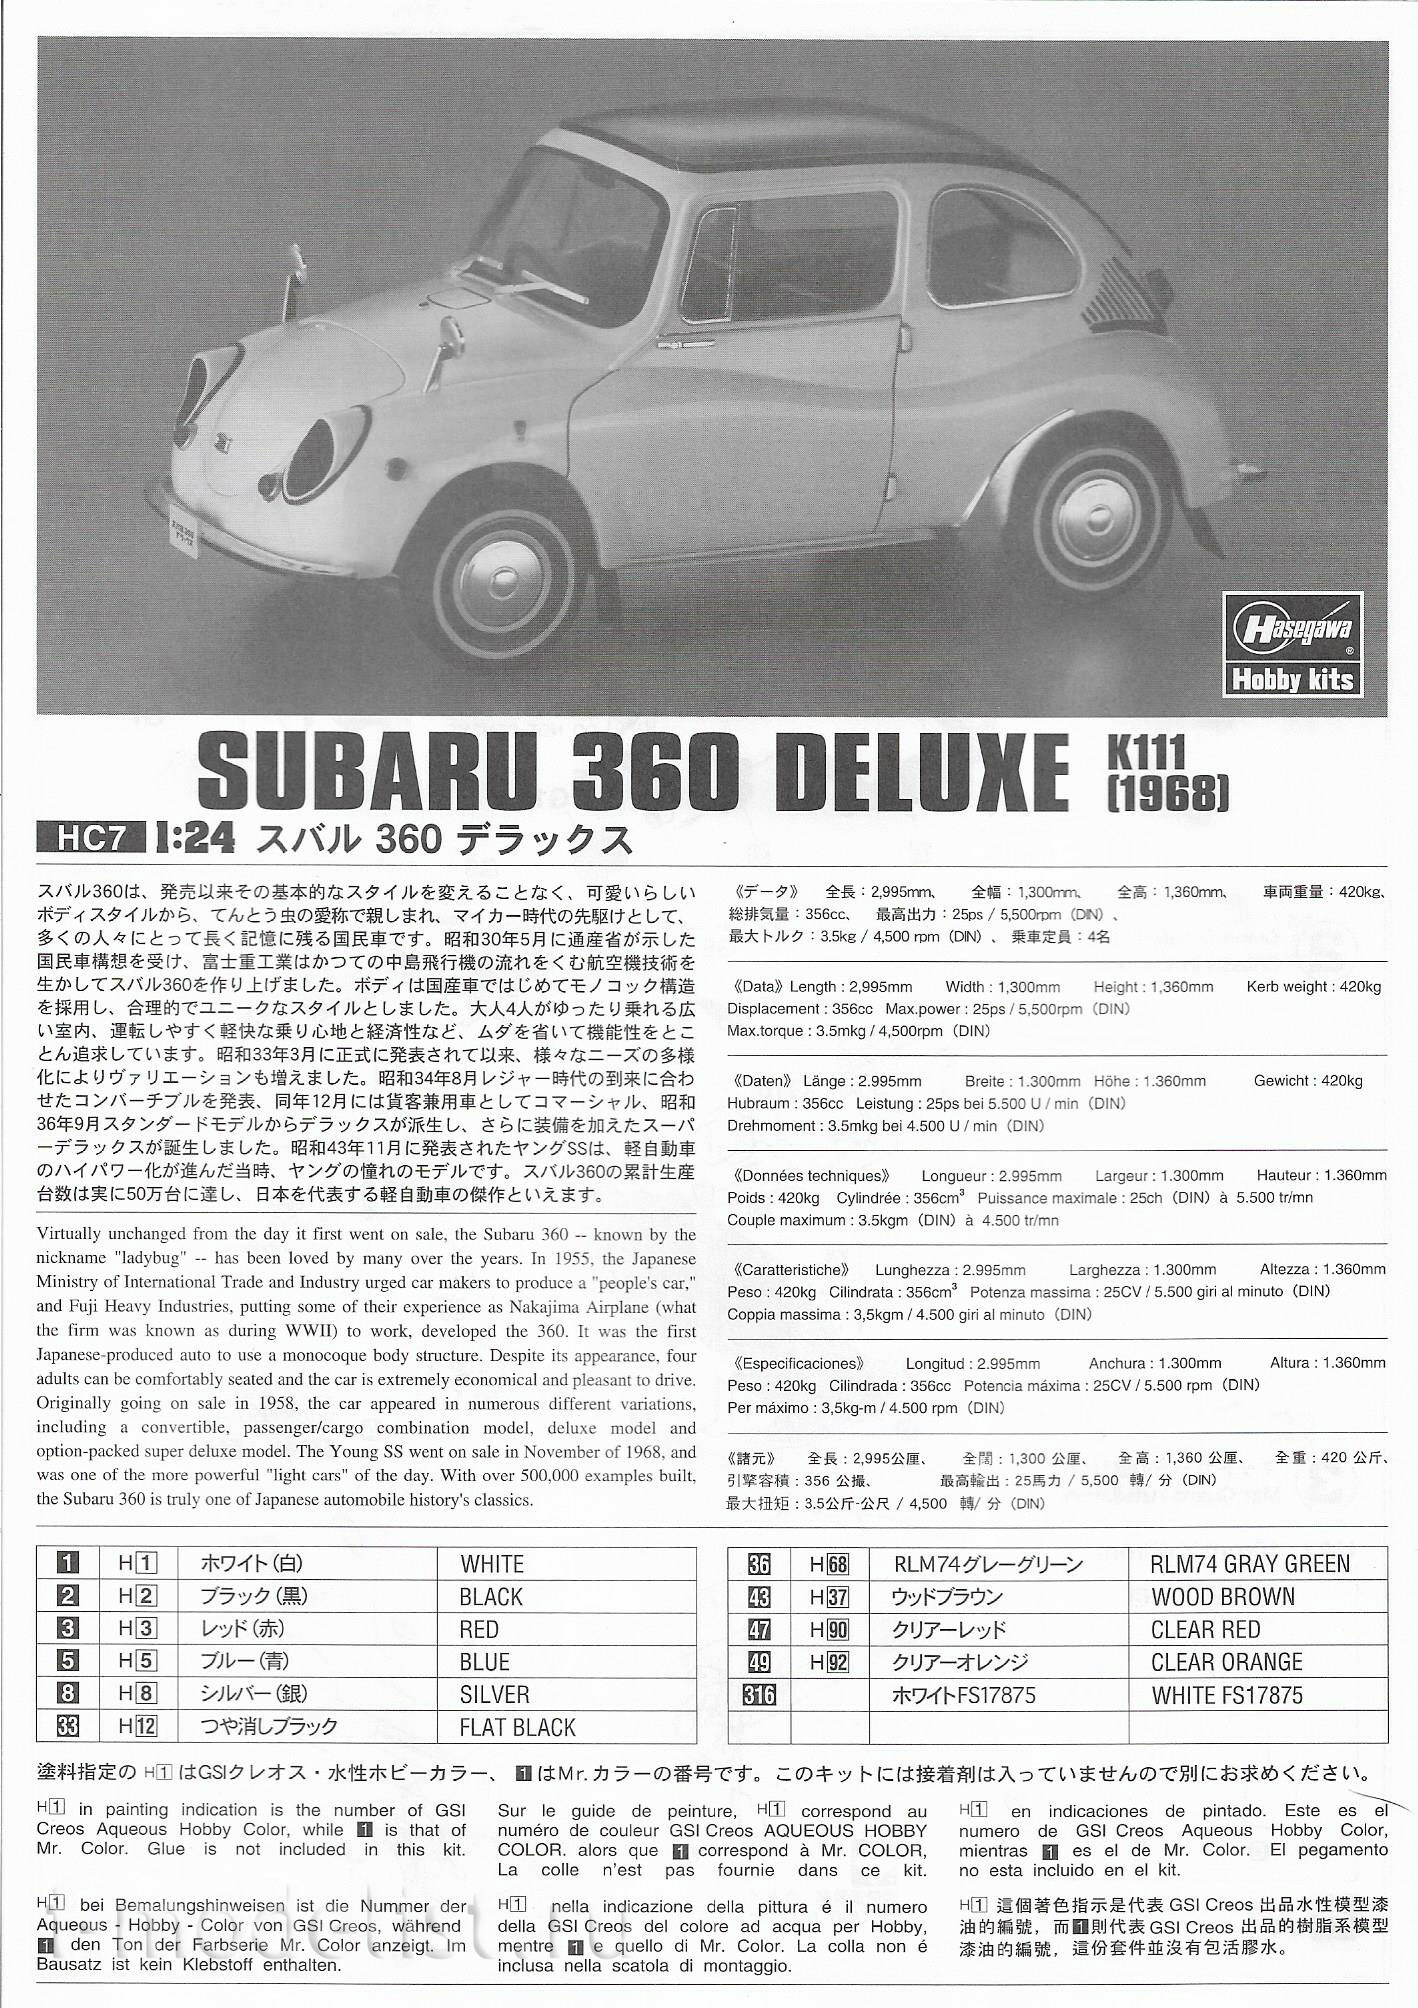 21207 Hasegawa 1/24 Автомобиль Subaru 360 Deluxe 